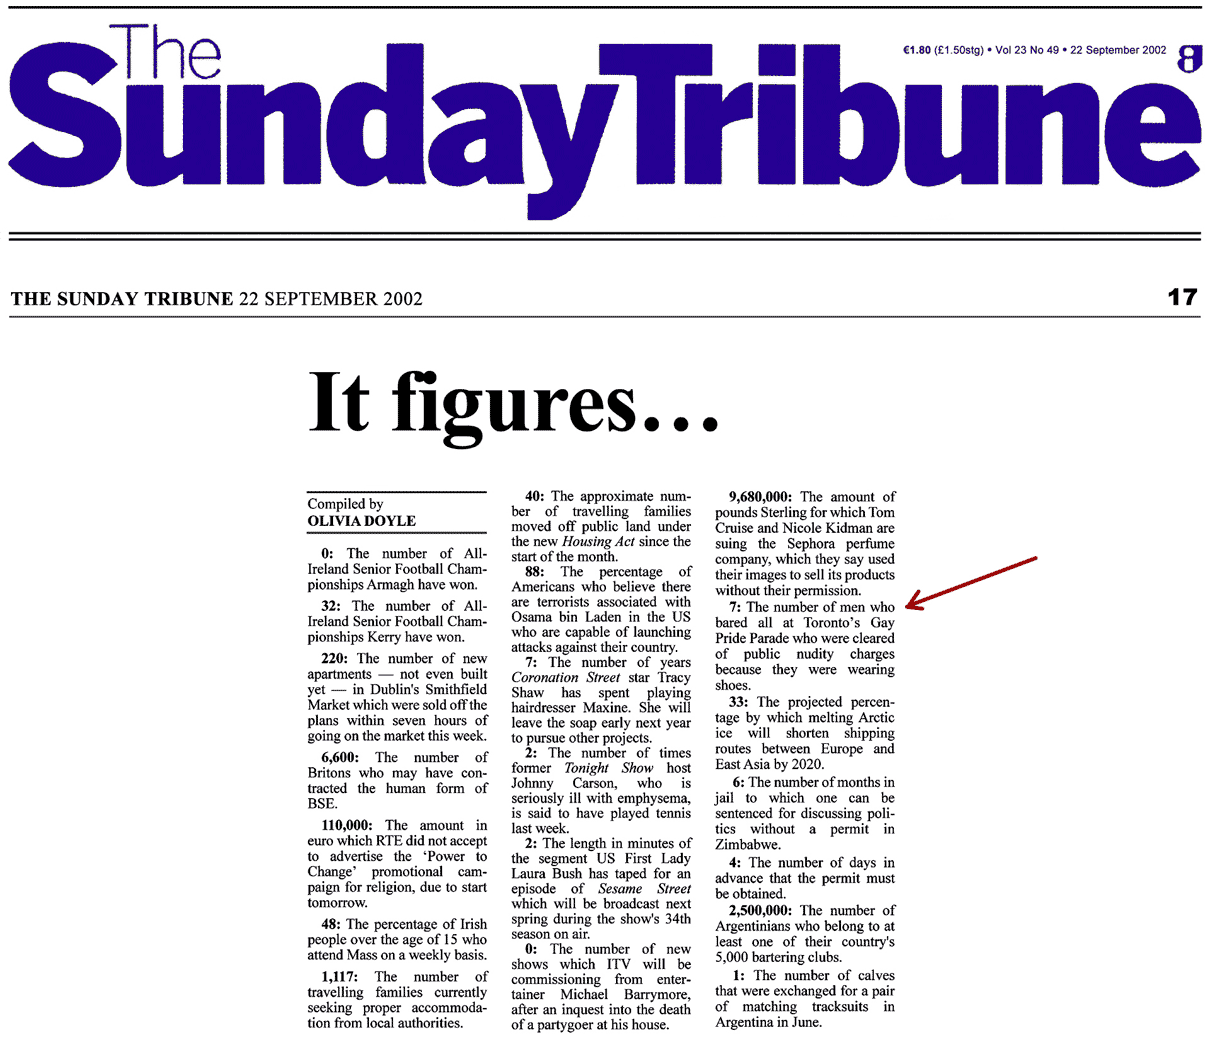 Sunday Tribune [Dublin, Ireland] 2002-09-22 Charges gone